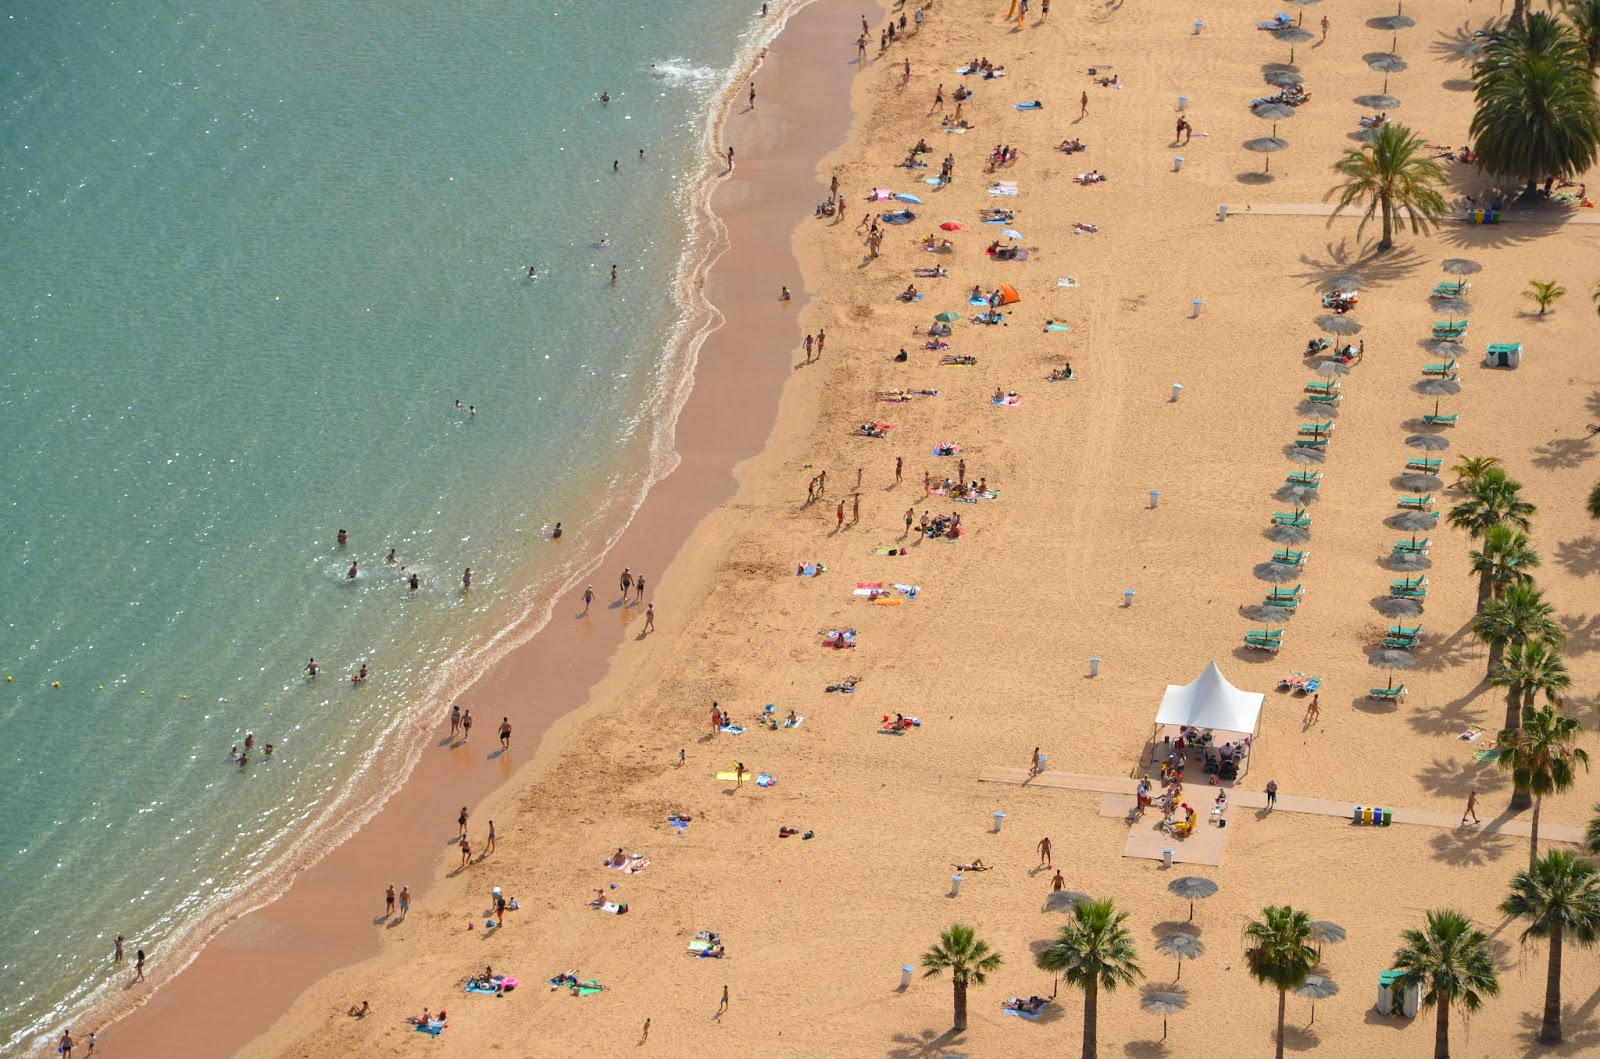 Zdjęcie Plaża De Las Teresitas - popularne miejsce wśród znawców relaksu